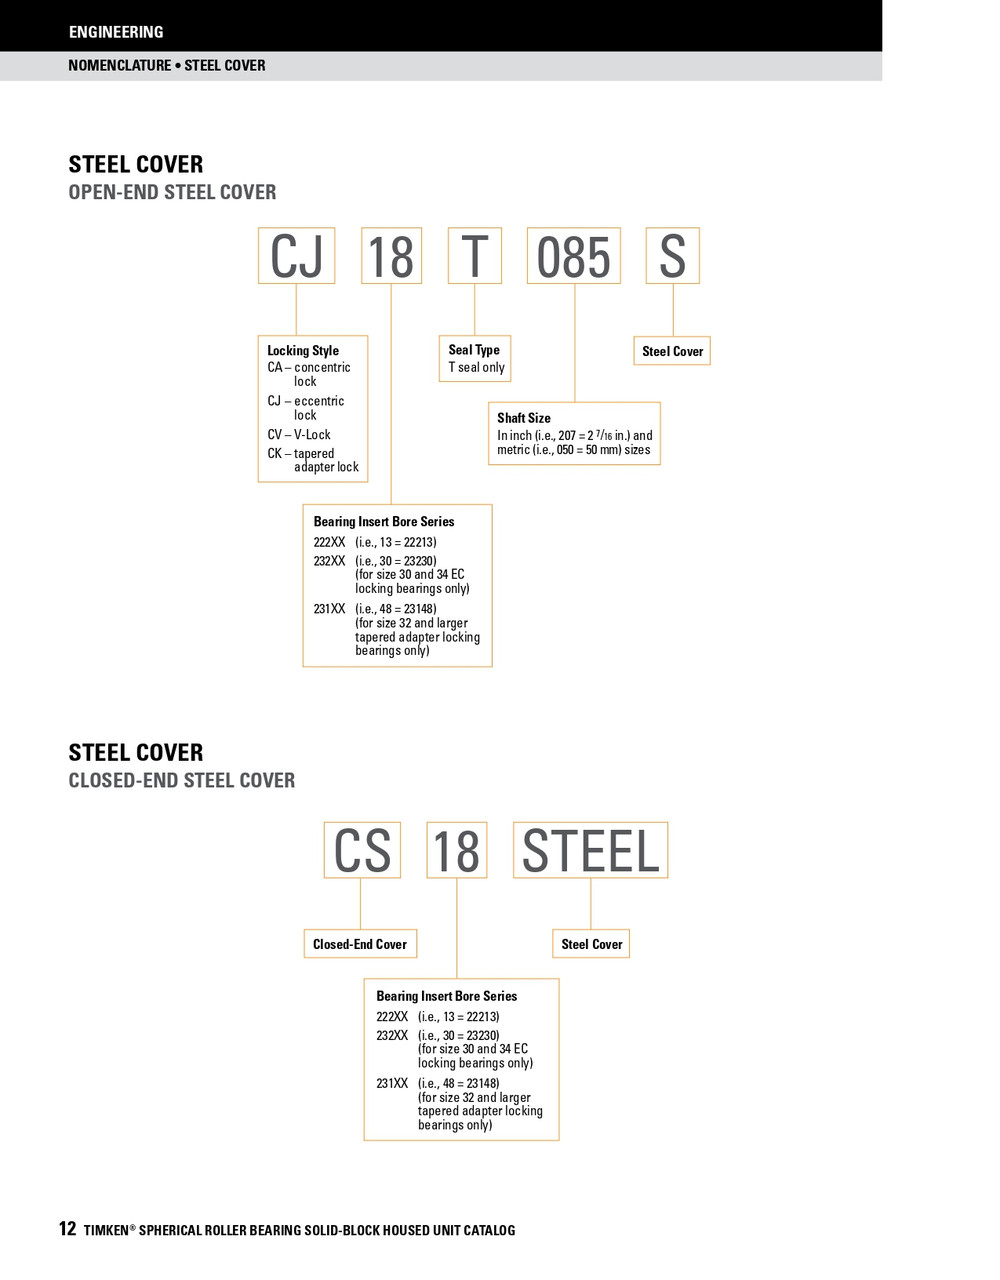 5-15/16" Timken SRB Steel Open End Cover w/Teflon Seal - TA/DV Taper Lock Bushing Type  CK34T515S